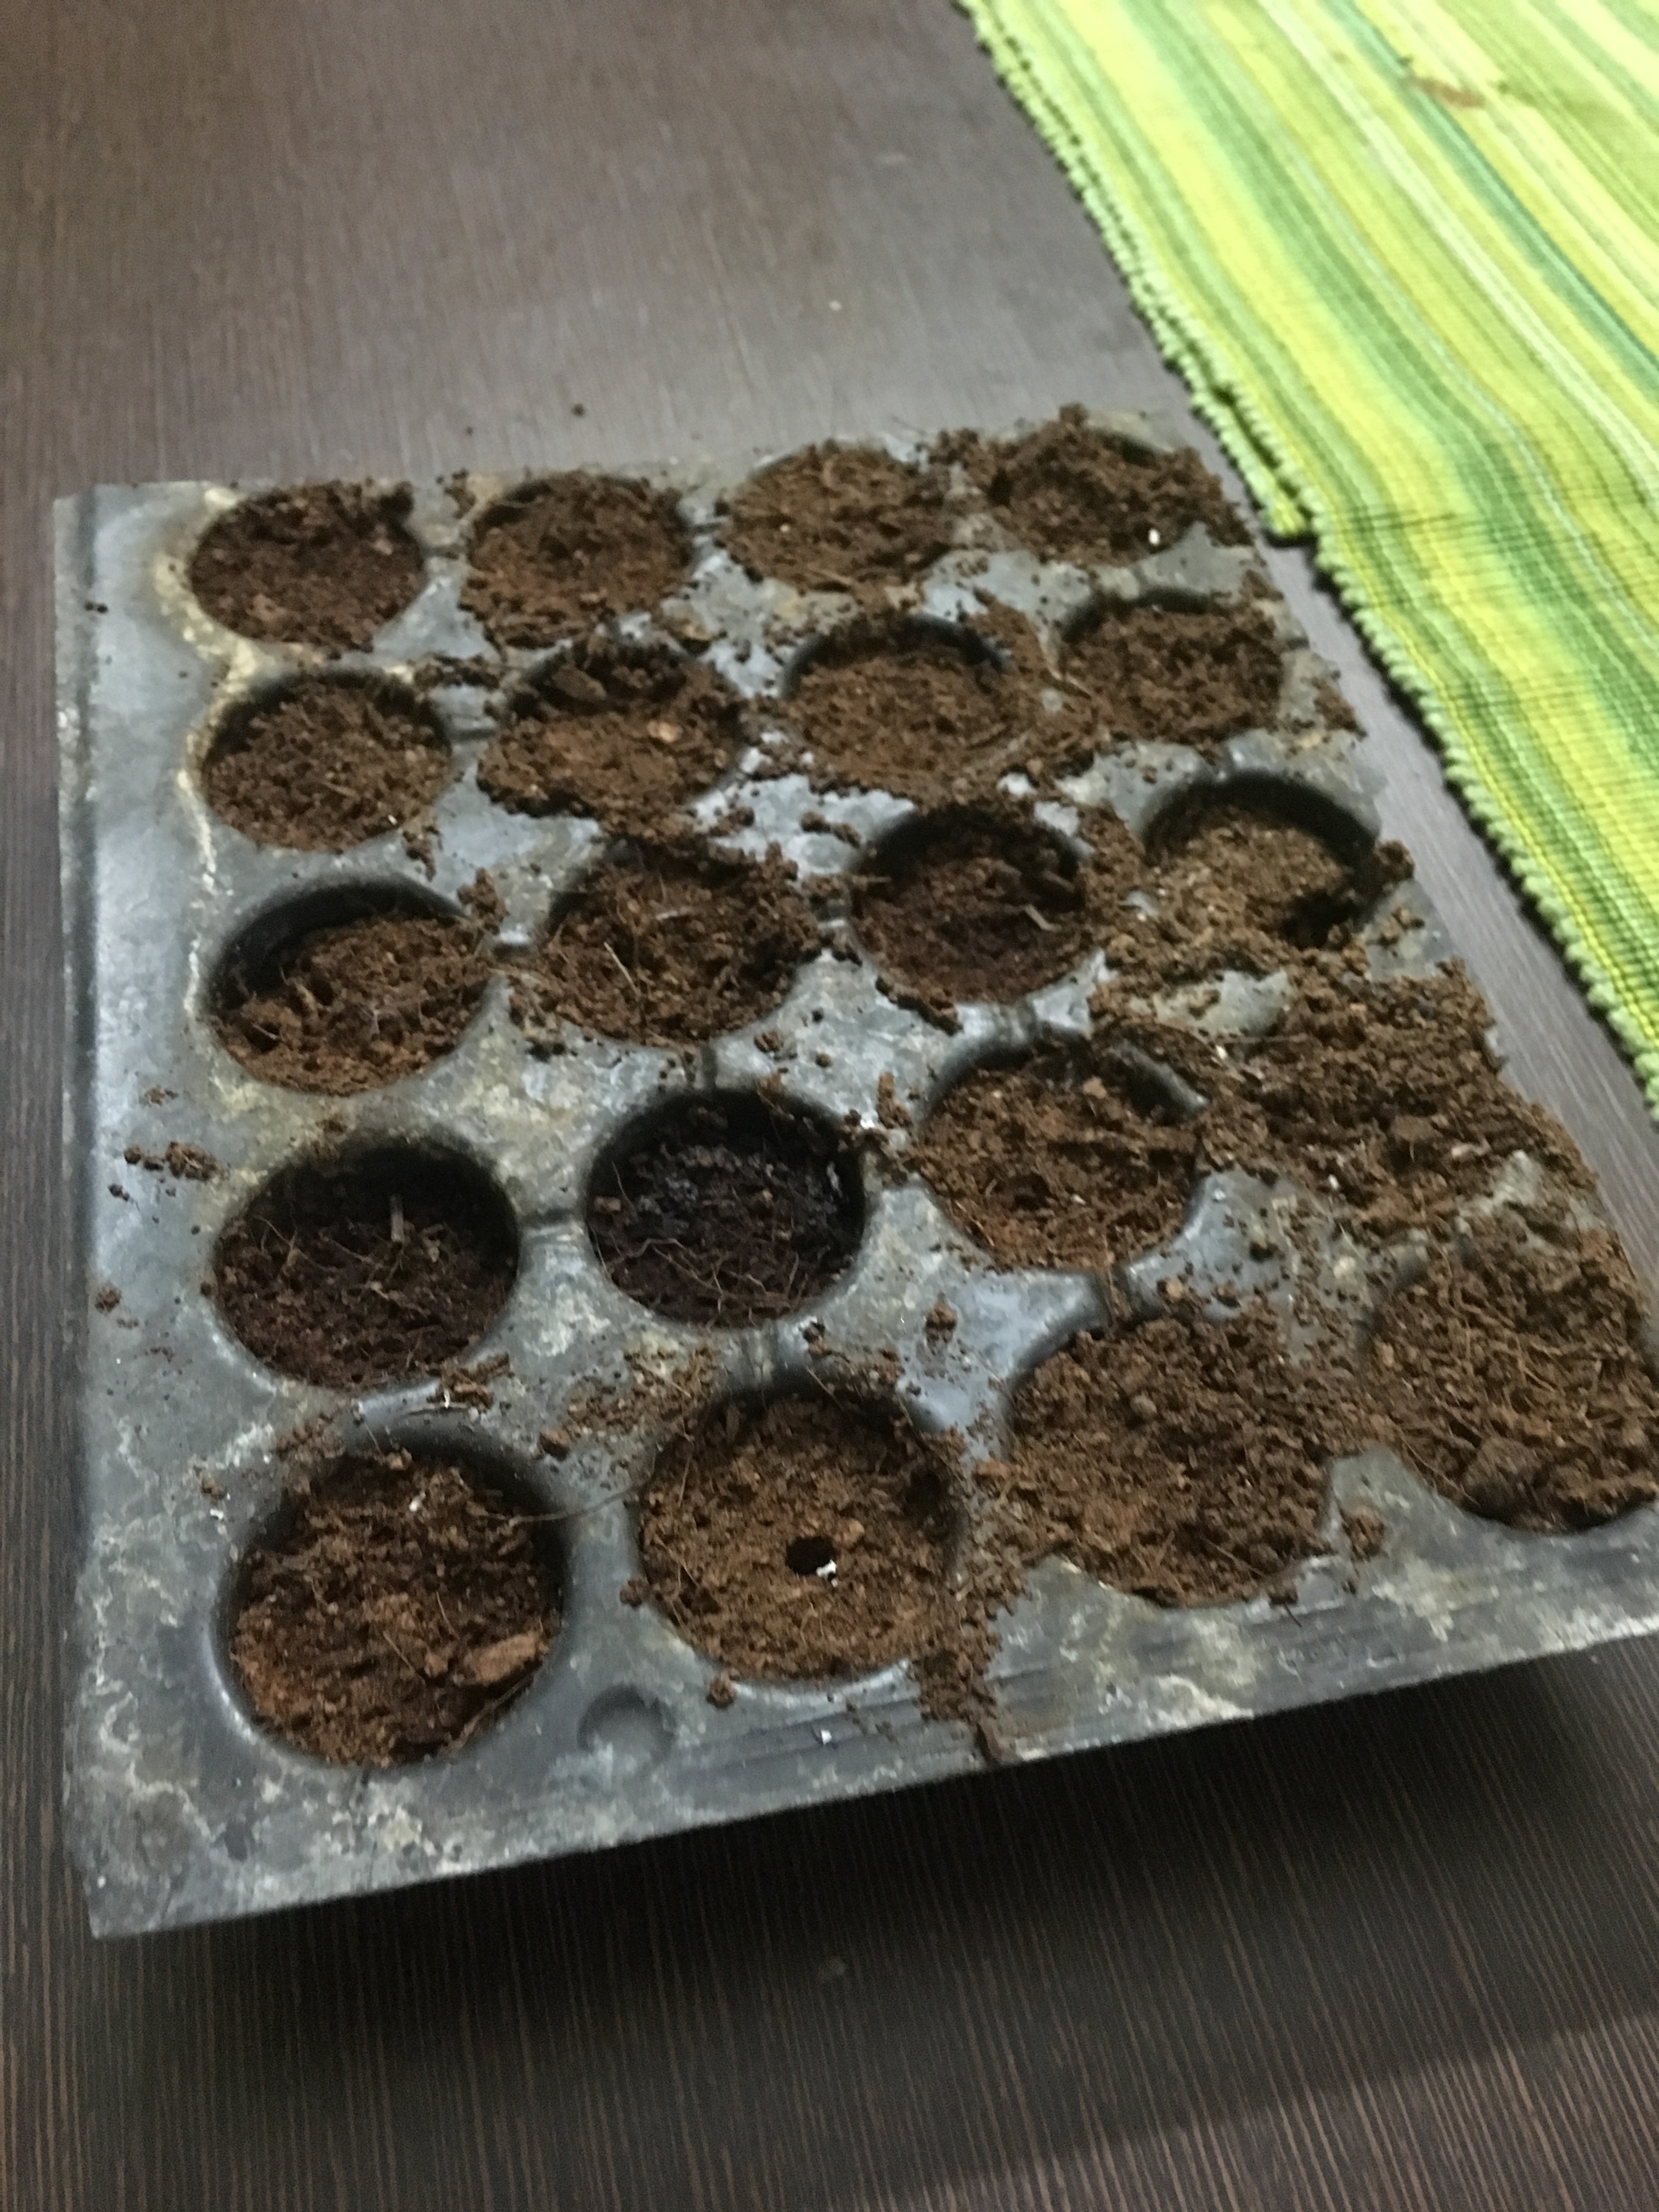 Seed Tray Ready